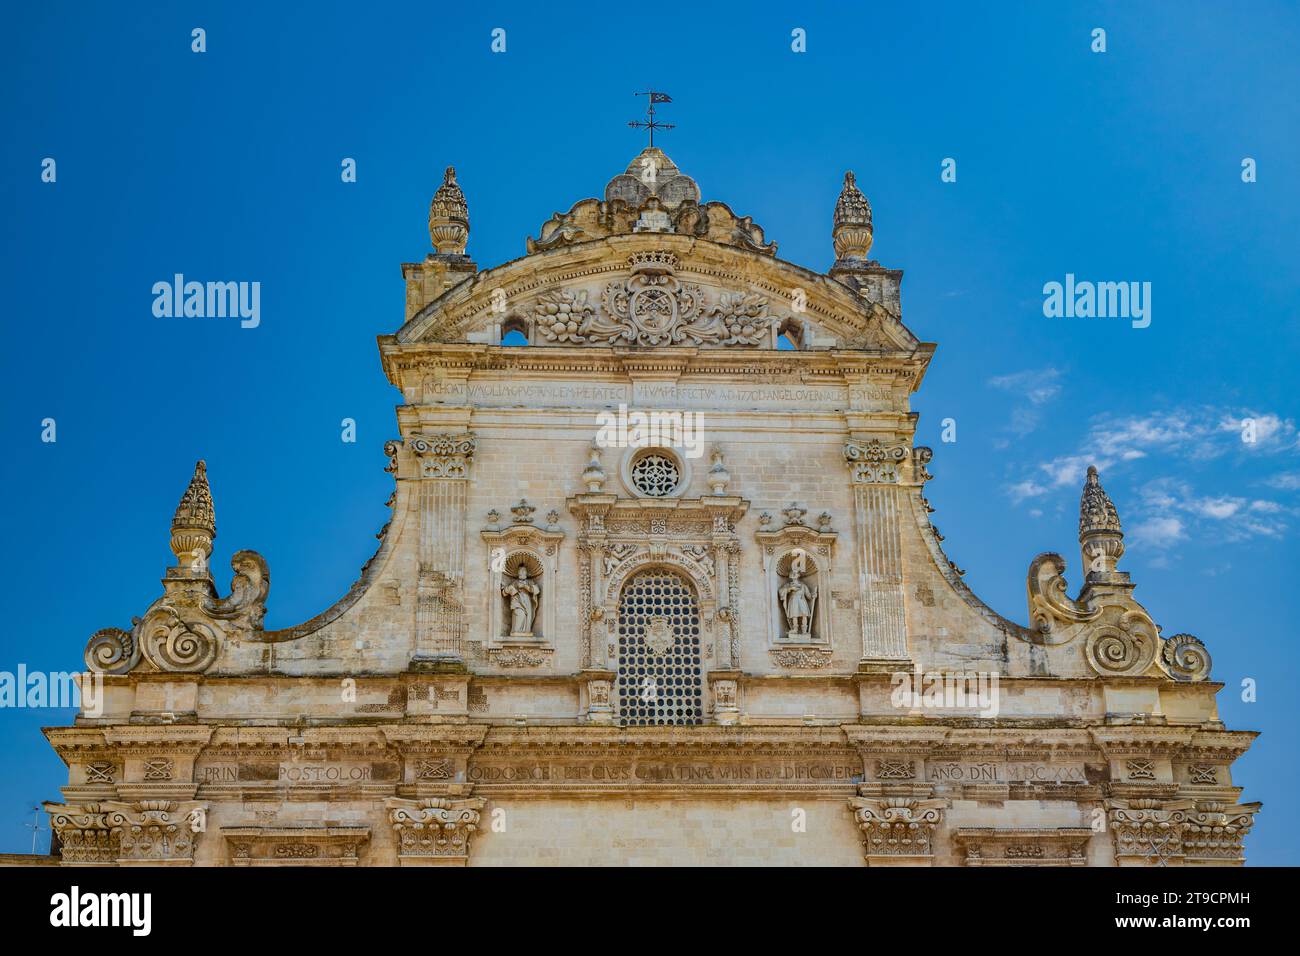 Galatina, Lecce, Apulien, Italien. Altes Dorf in Salento. Die wundervolle Kirche der Heiligen Peter und Paul, im barocken Stil. Viele Marmorstatuen und s Stockfoto